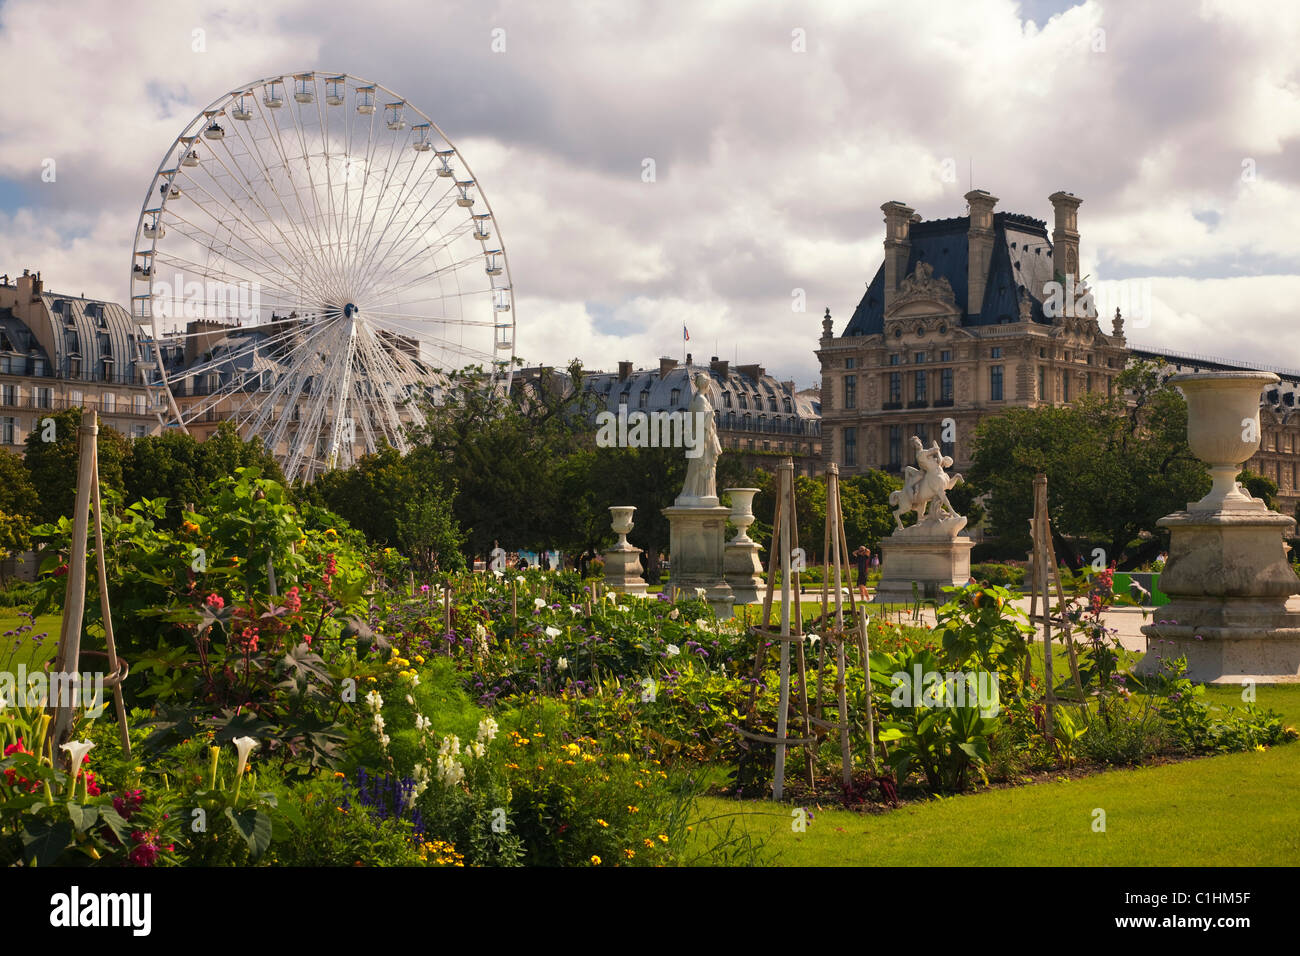 Jardin de fleurs aux couleurs vives, des statues et le carrousel Immeuble Richelieu vue depuis le jardin des Tuileries au Louvre Paris France Banque D'Images